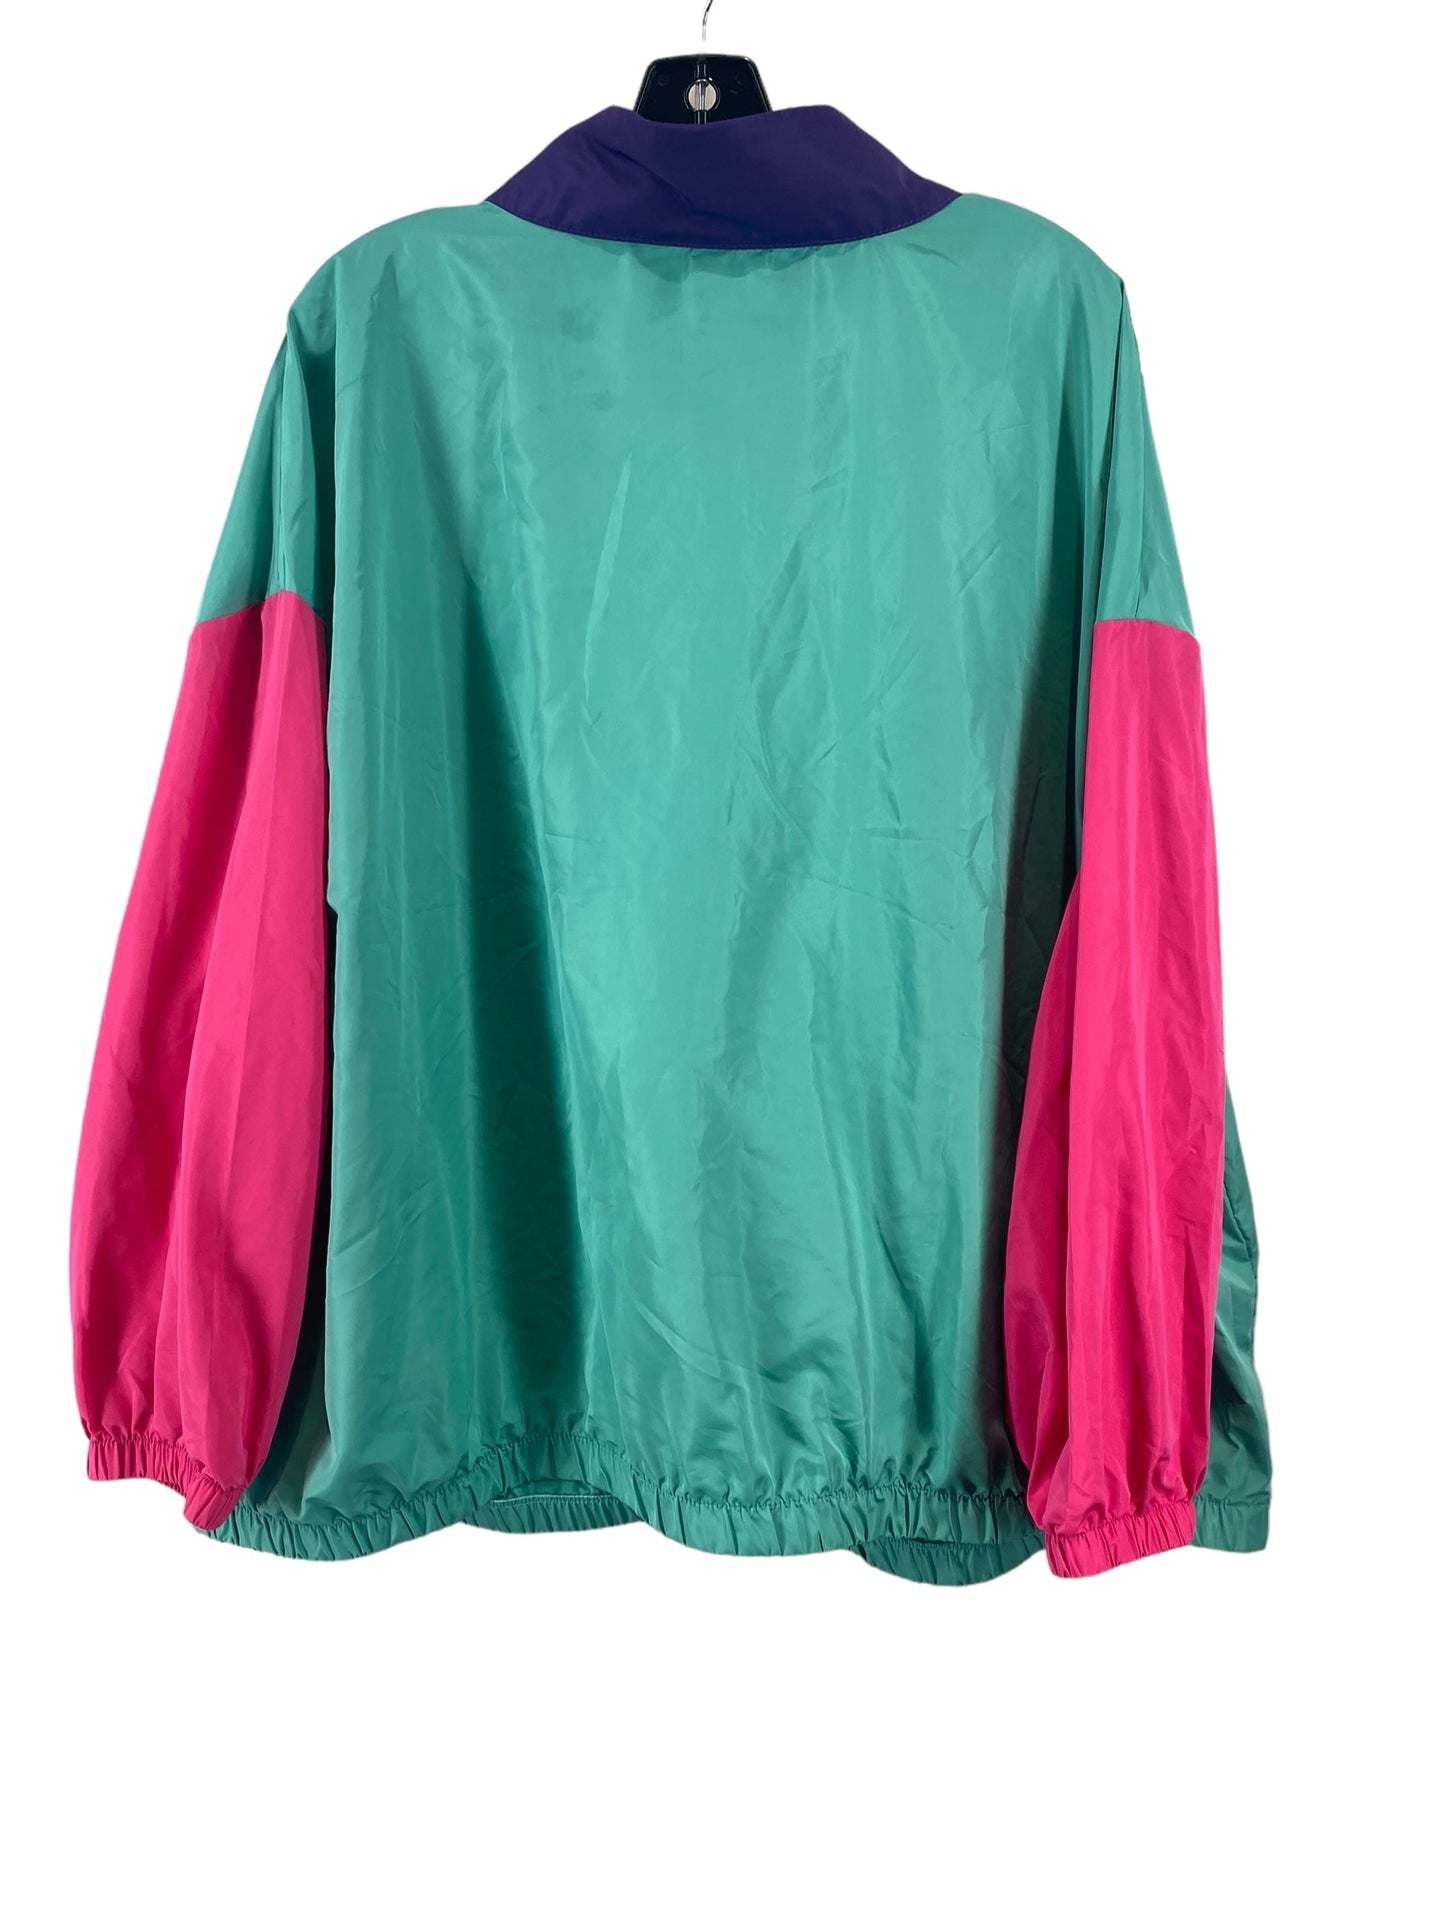 Jacket Windbreaker By Shein  Size: 3x